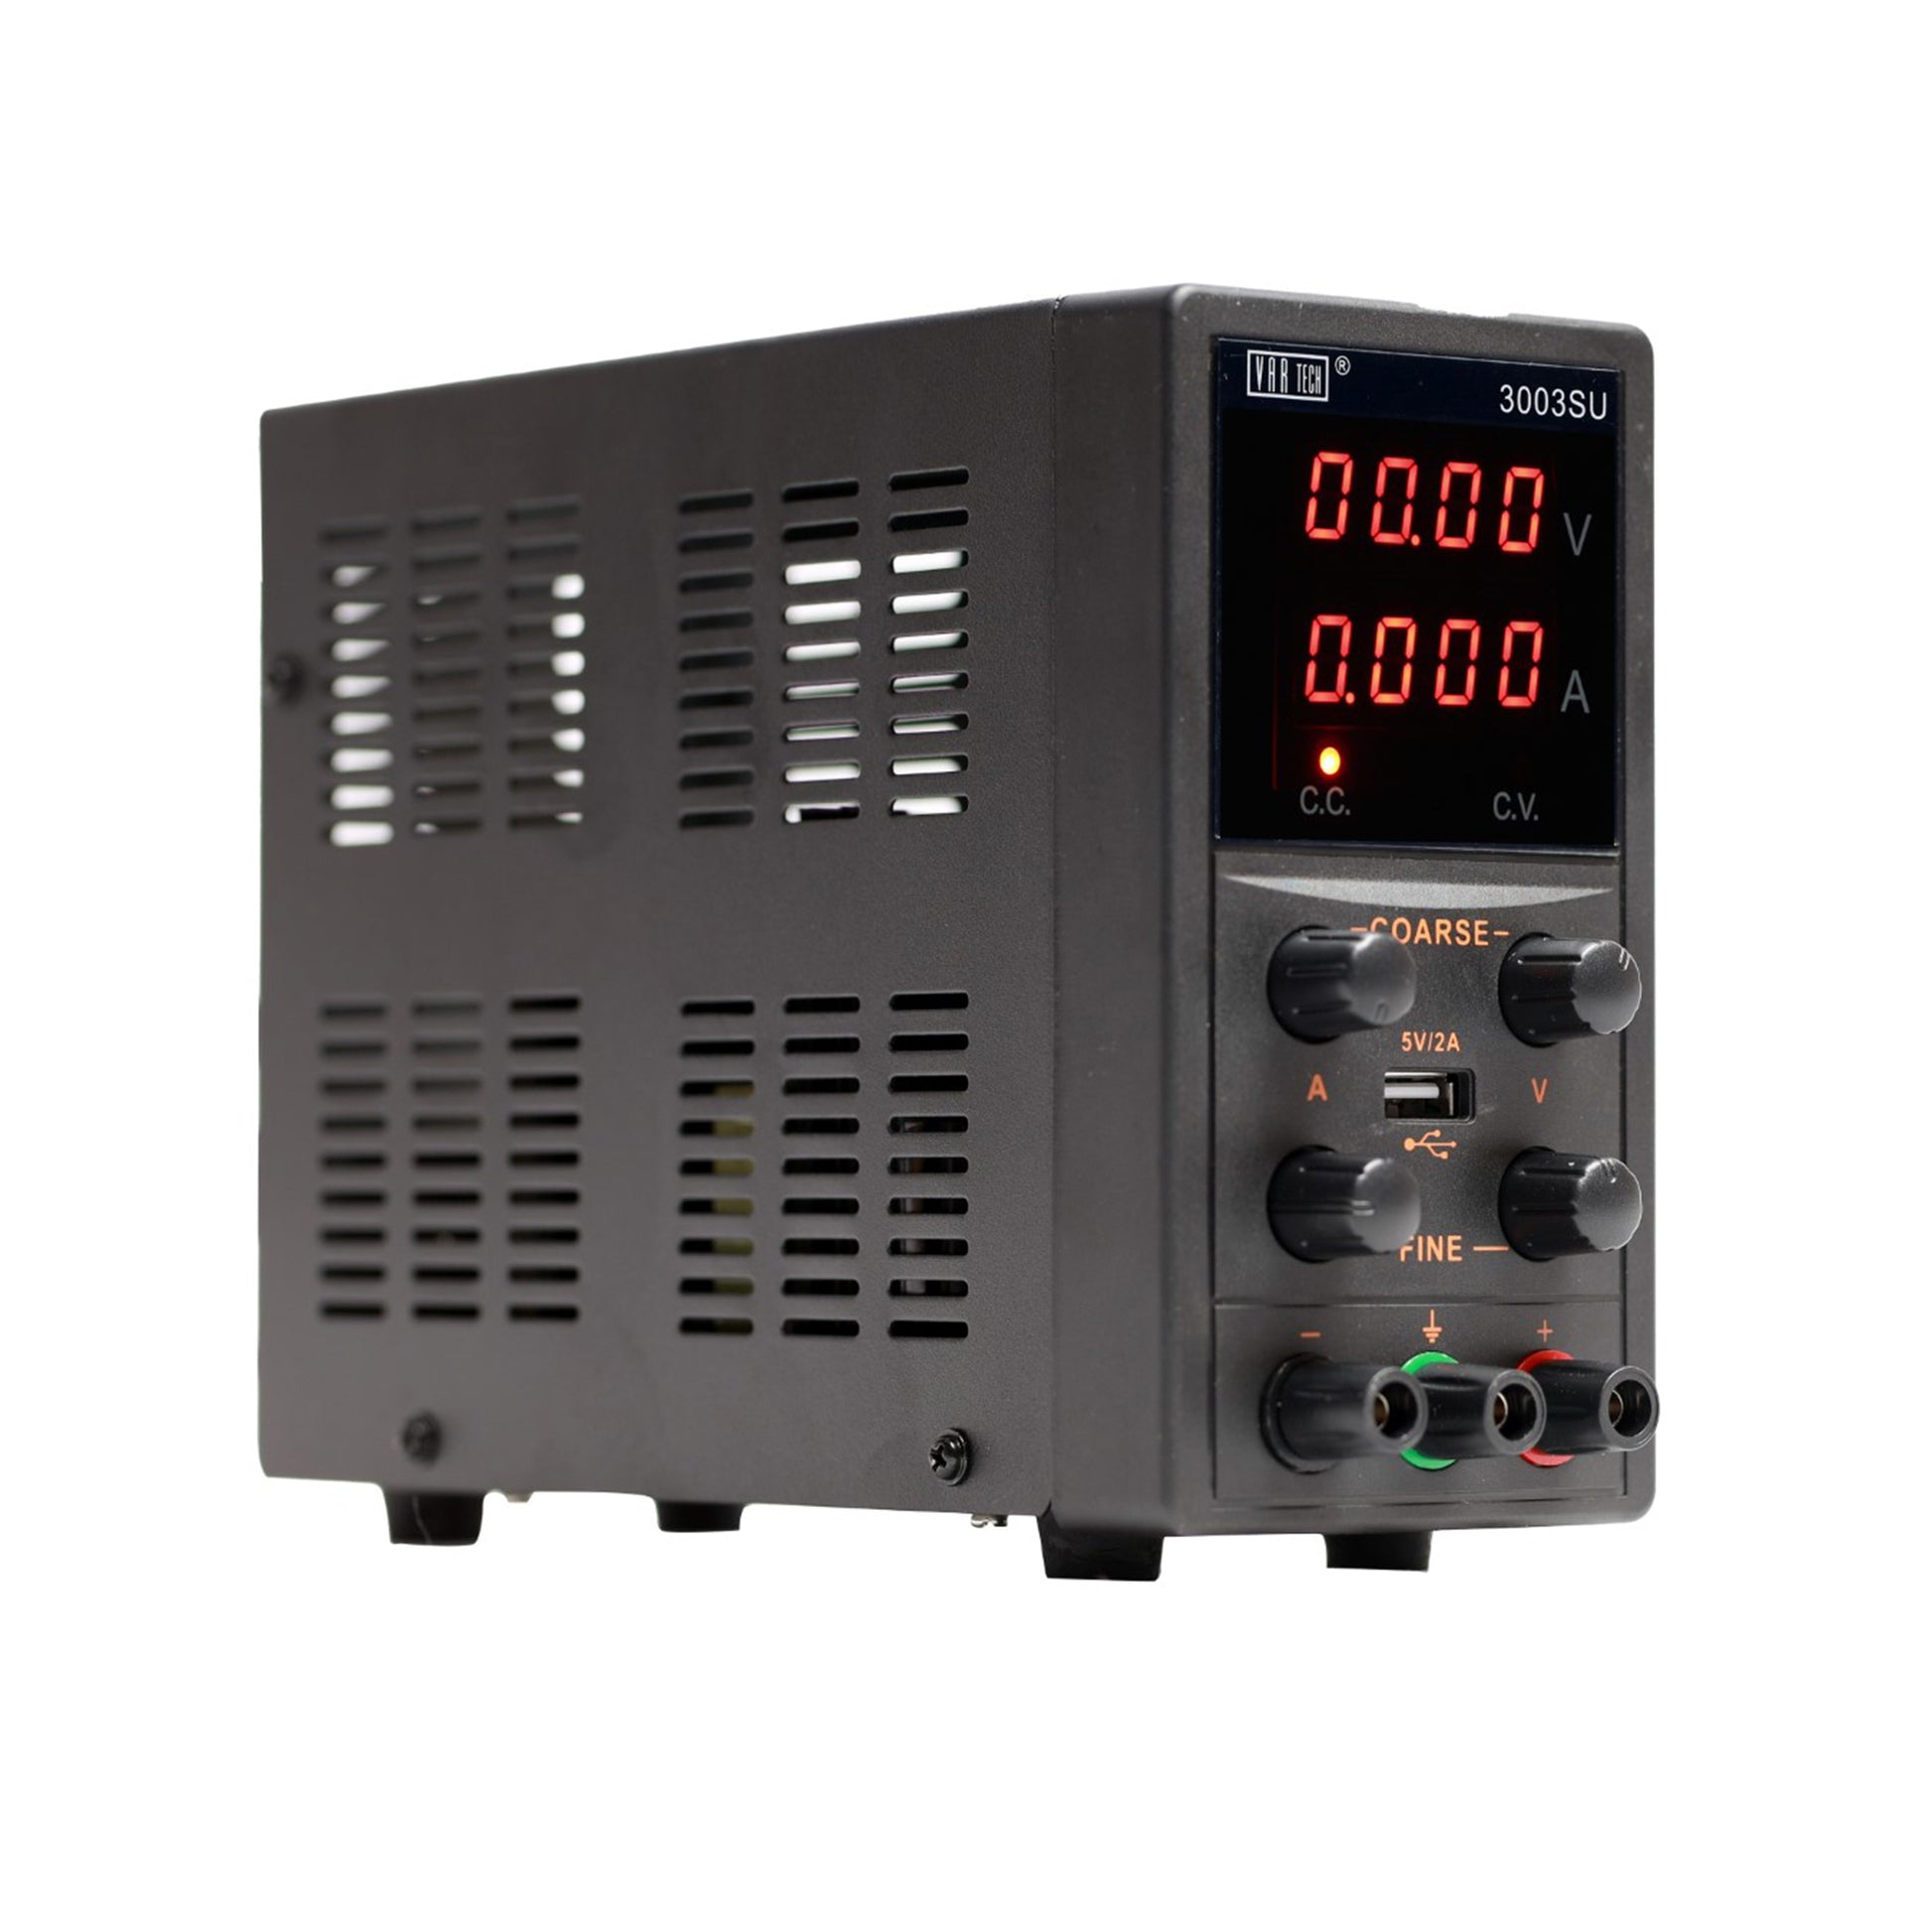 MS 300V / 500V / 3AP Power Supply